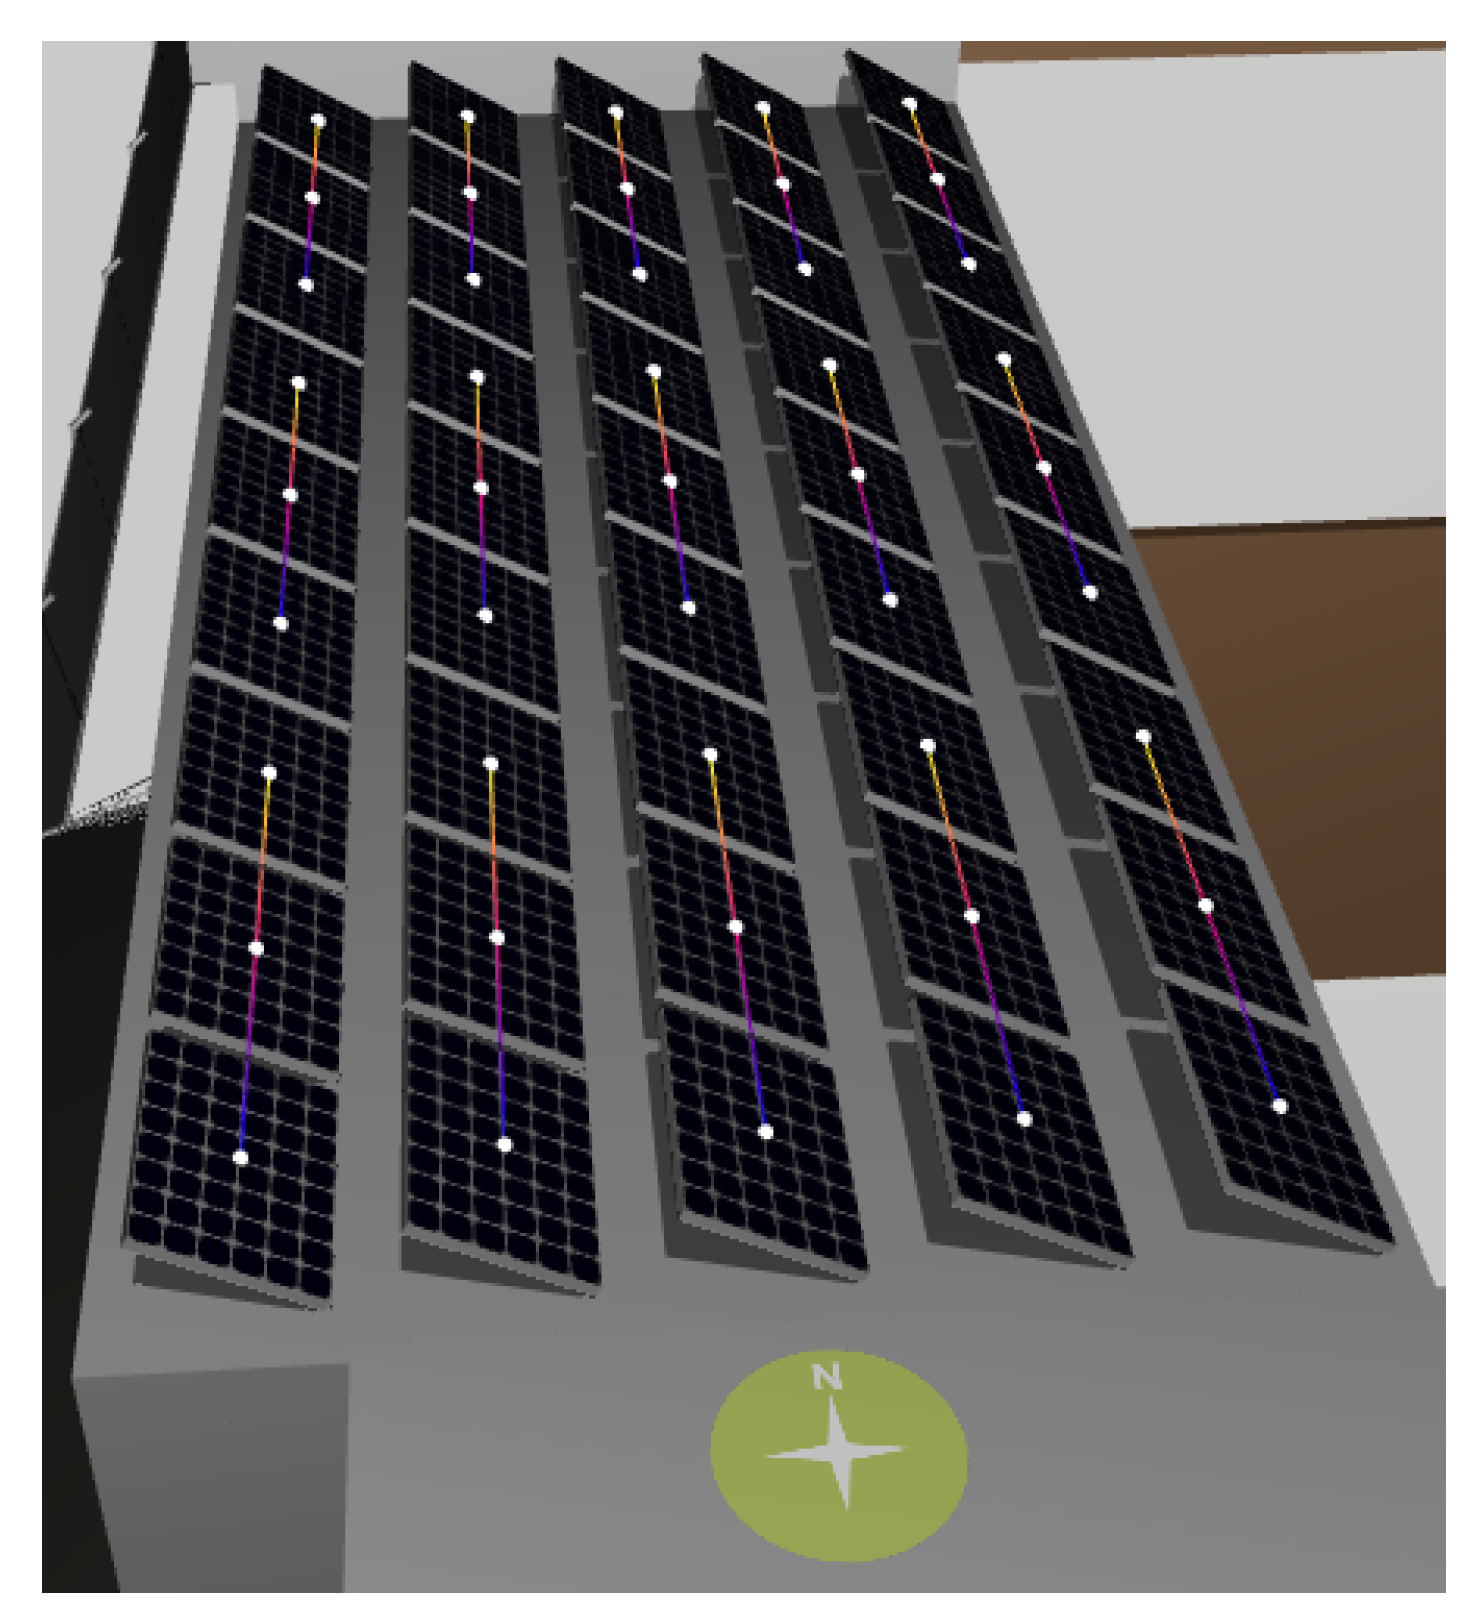 Painel Solar - - 3D Warehouse